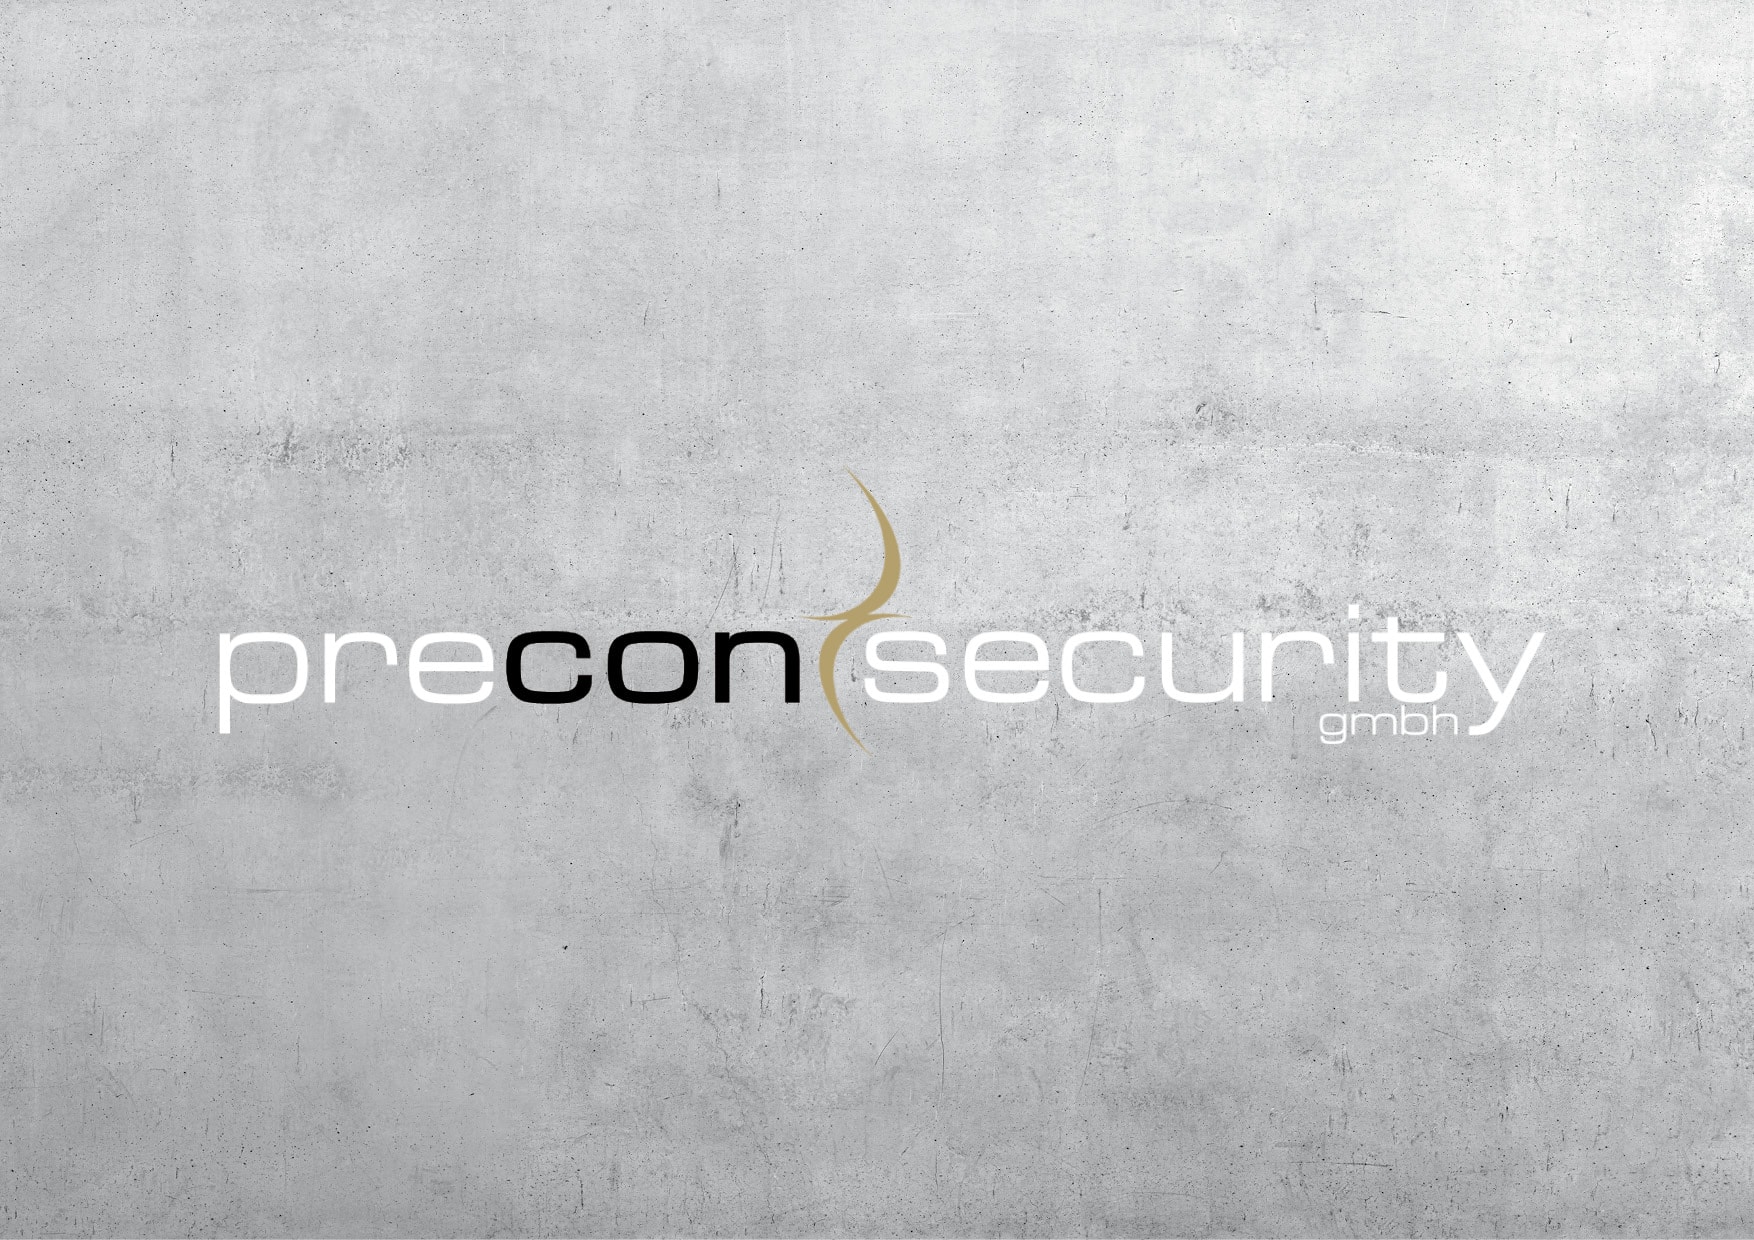 Homepage Relaunch für Sicherheitsunternehmen durch Ronald Wissler | Visuelle Kommunikation